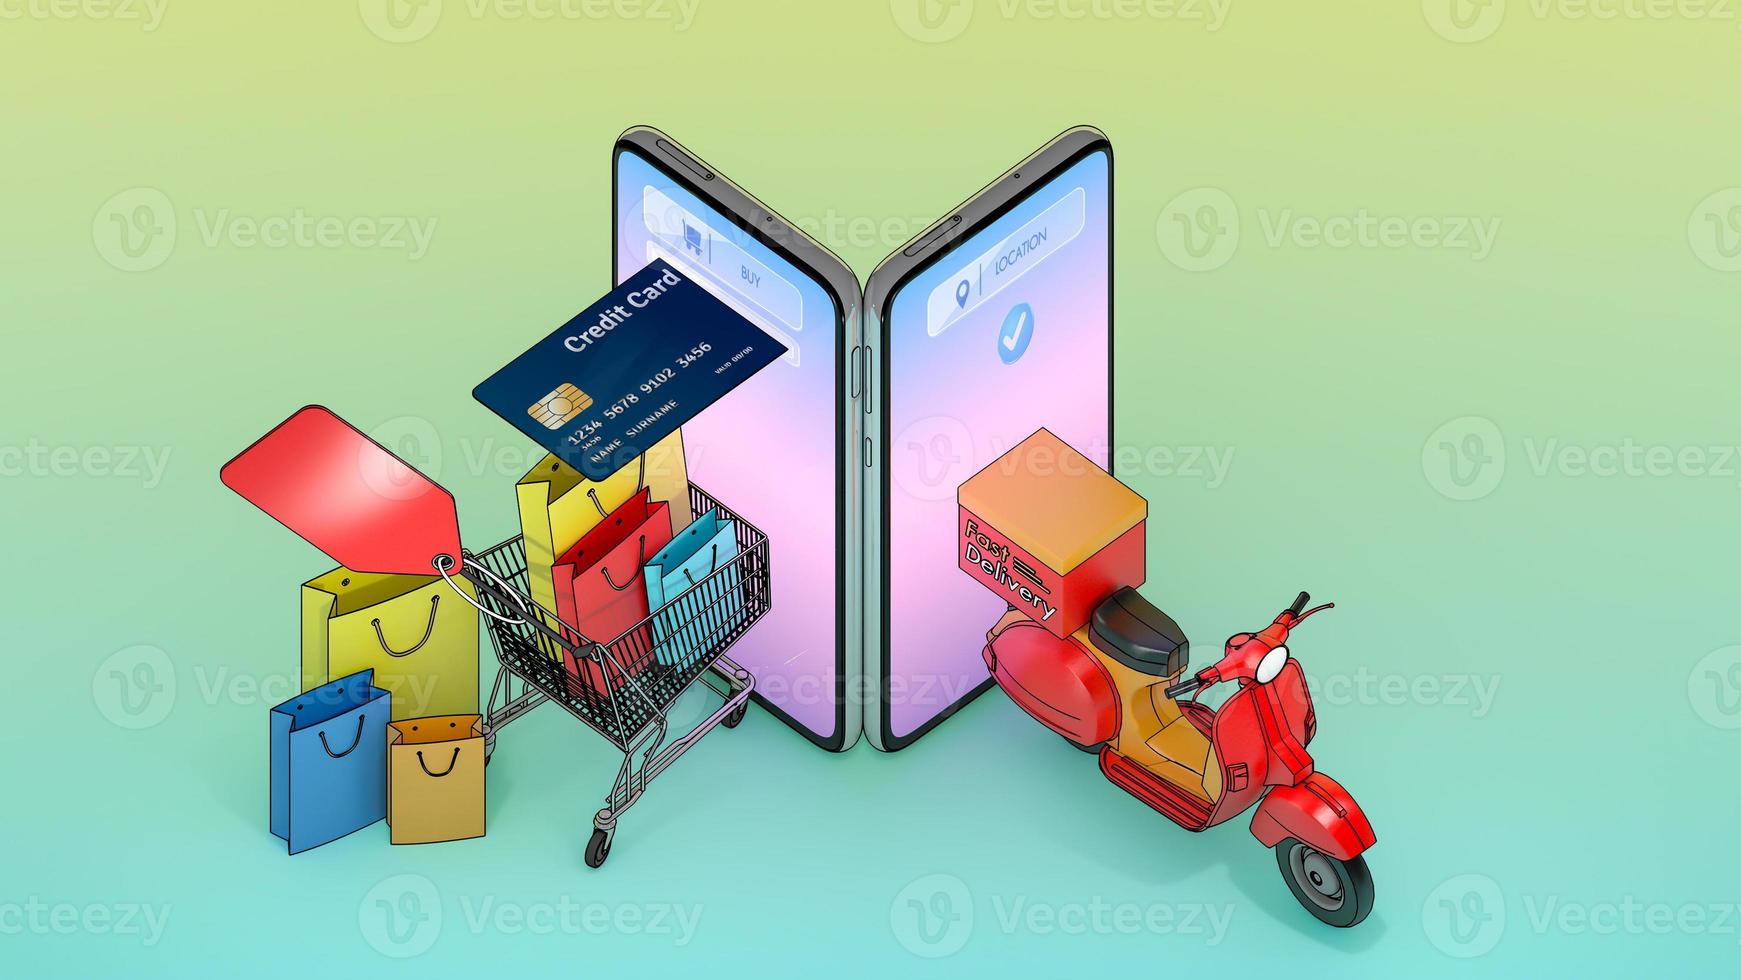 sacolas de papel coloridas e cartão de crédito em um carrinho com scooter apareceram na tela de smartphones., conceito de serviço de entrega rápida e compras on-line., ilustração 3d com traçado de recorte de objeto. foto